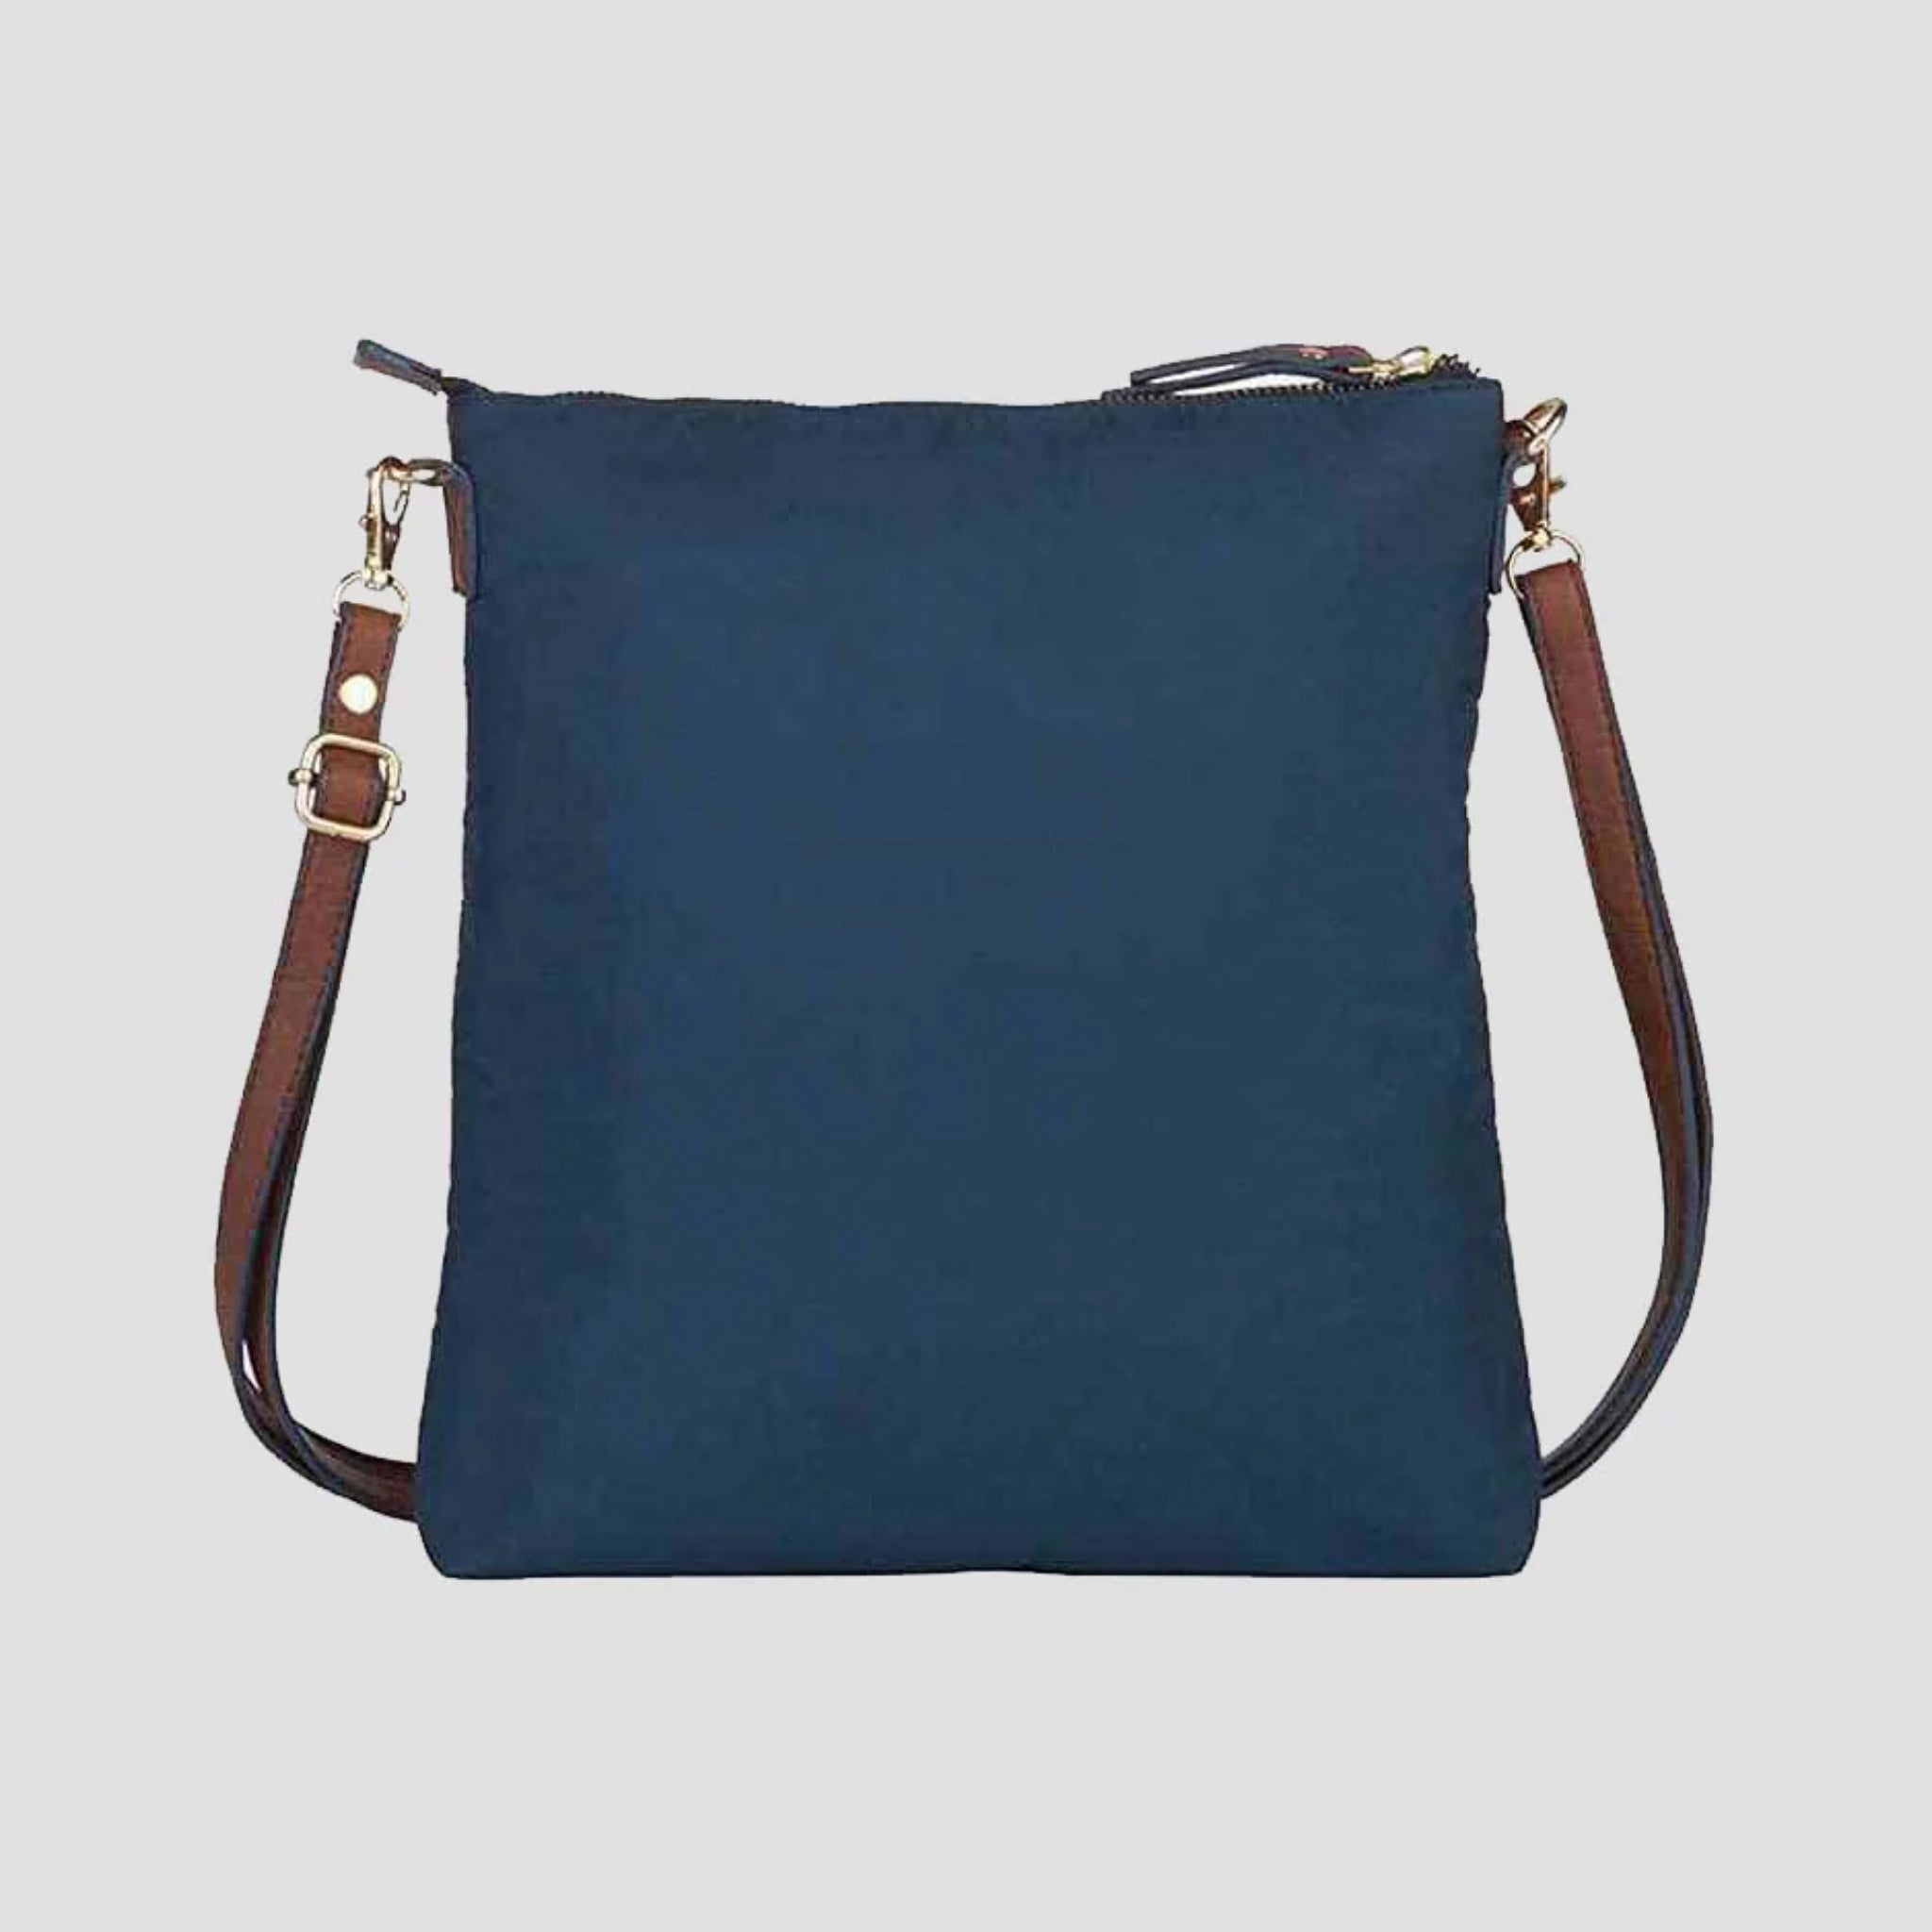 Mona B - Medium Messenger Crossbody Bag with Stylish Design for Women (RP-121 NAV)